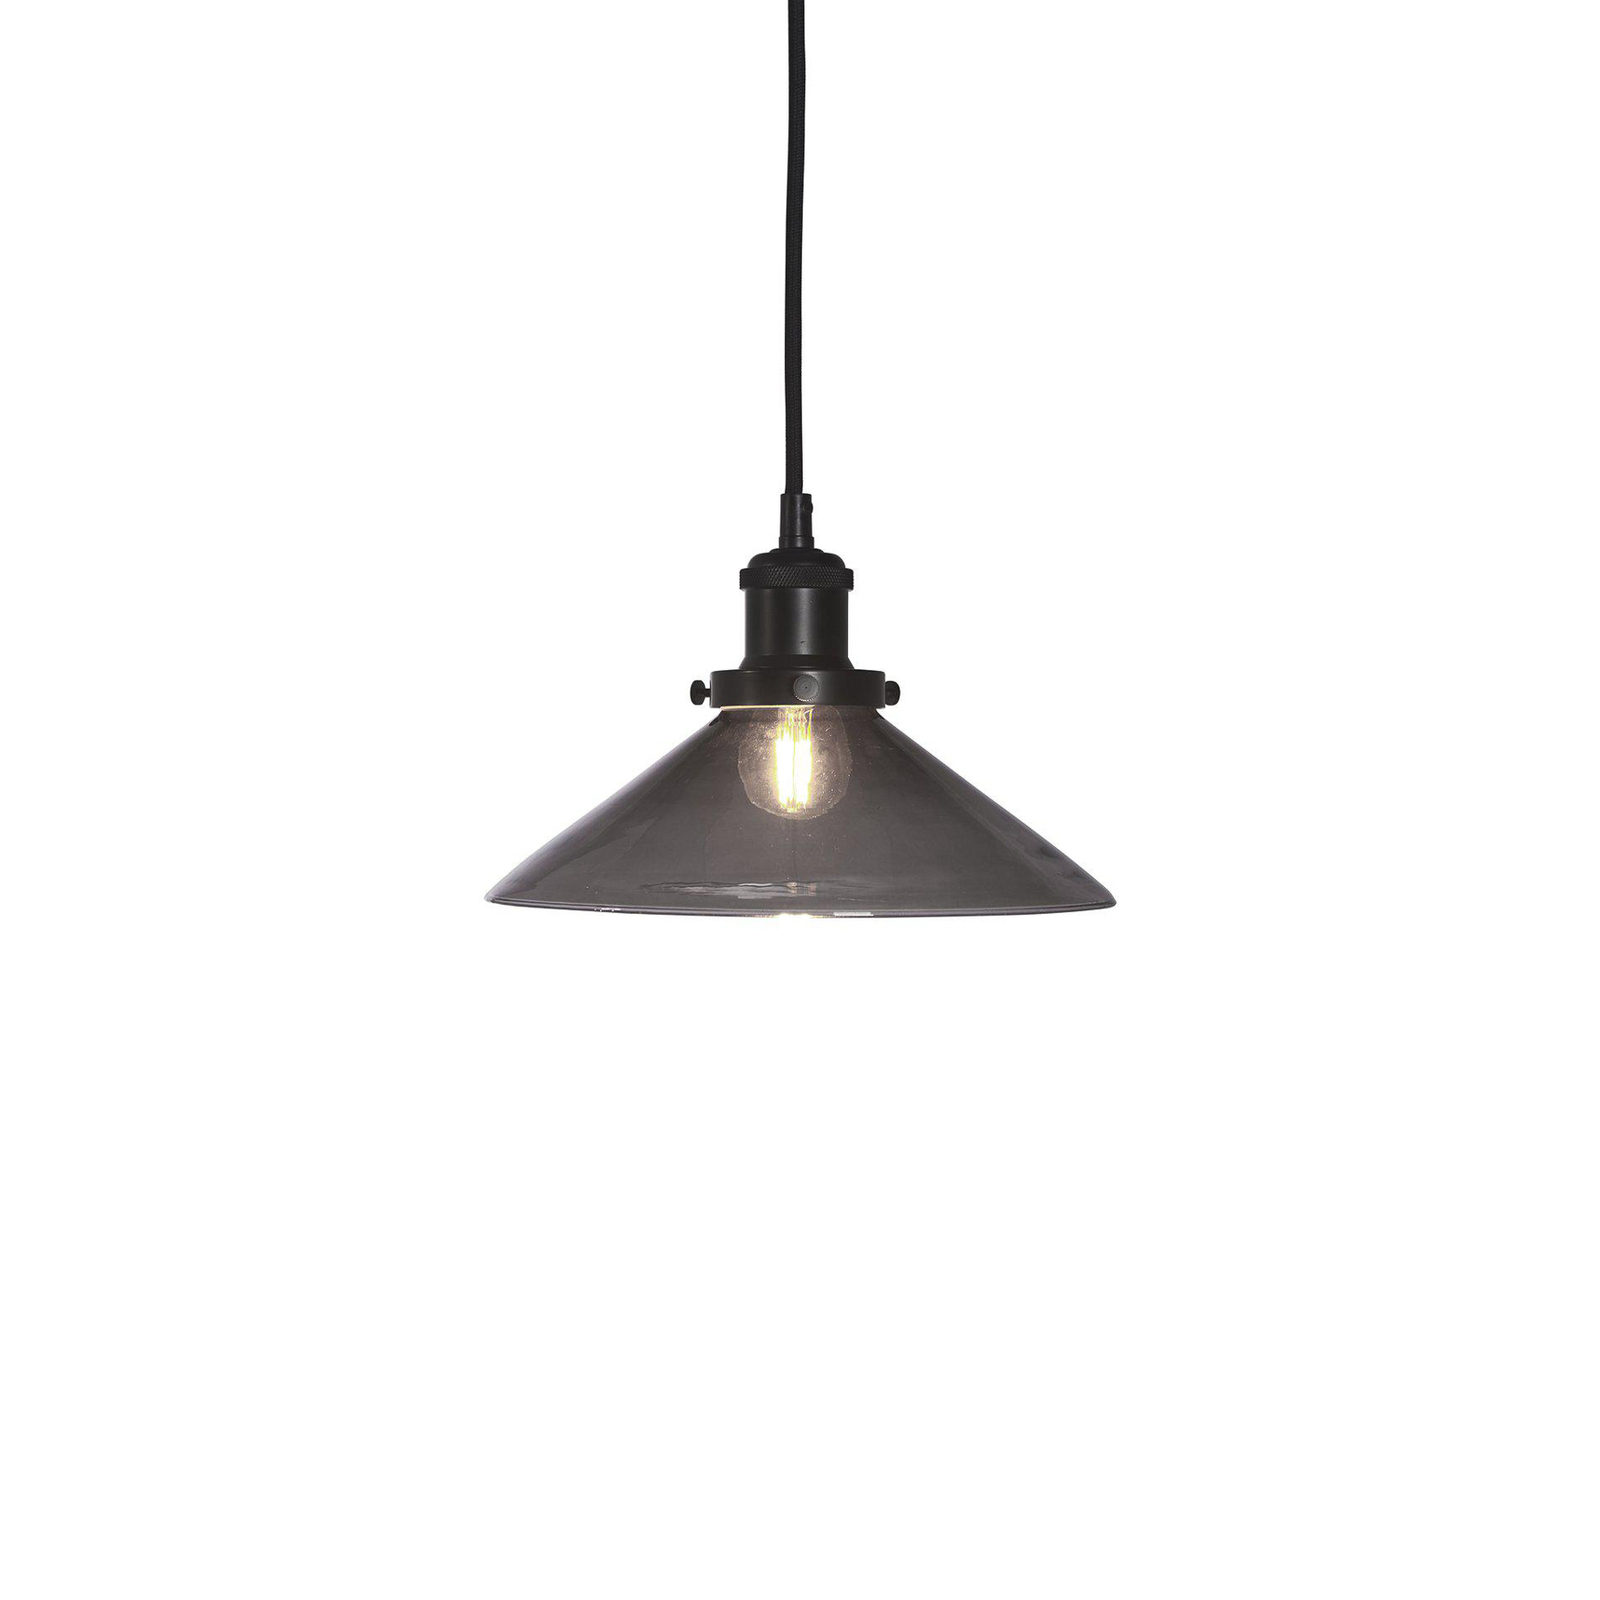 PR Home hanglamp August, zwart, Ø 25 cm